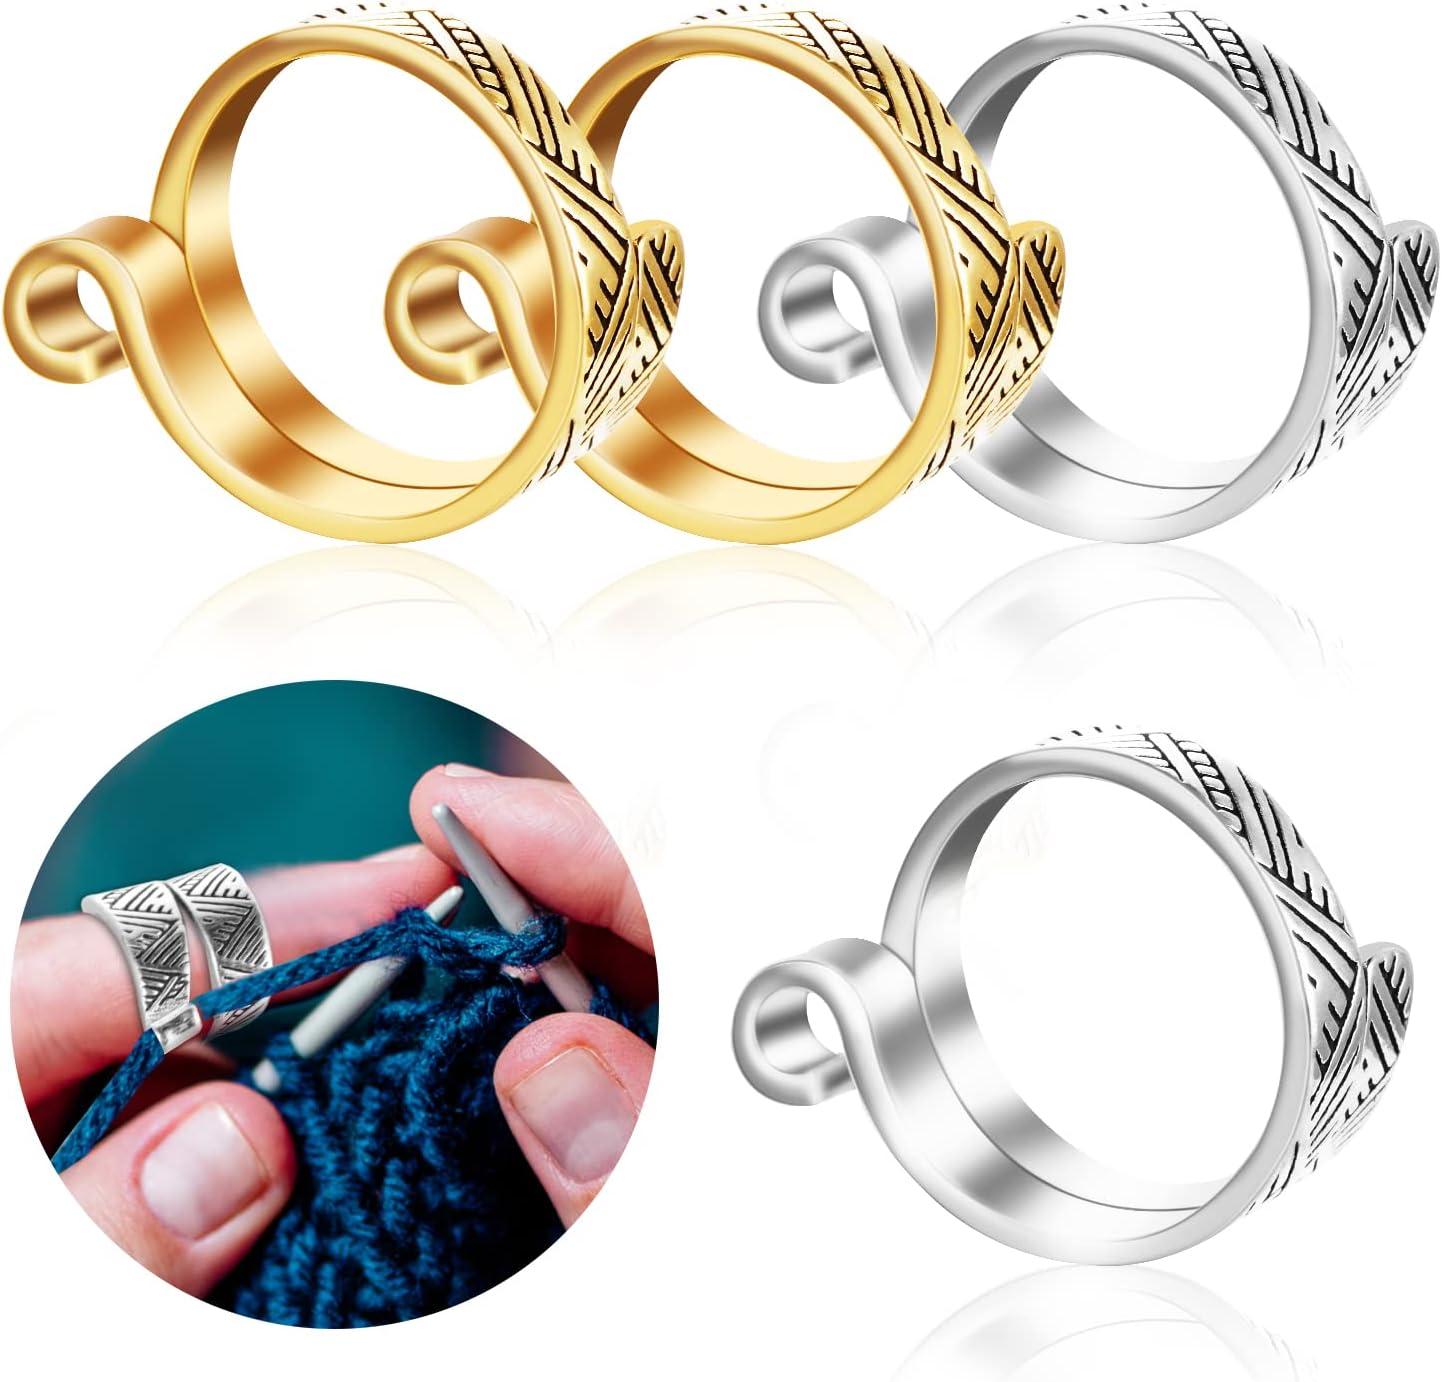 Crochet Knitting Ring, Knitting Accessories, Crochet Ring Finger